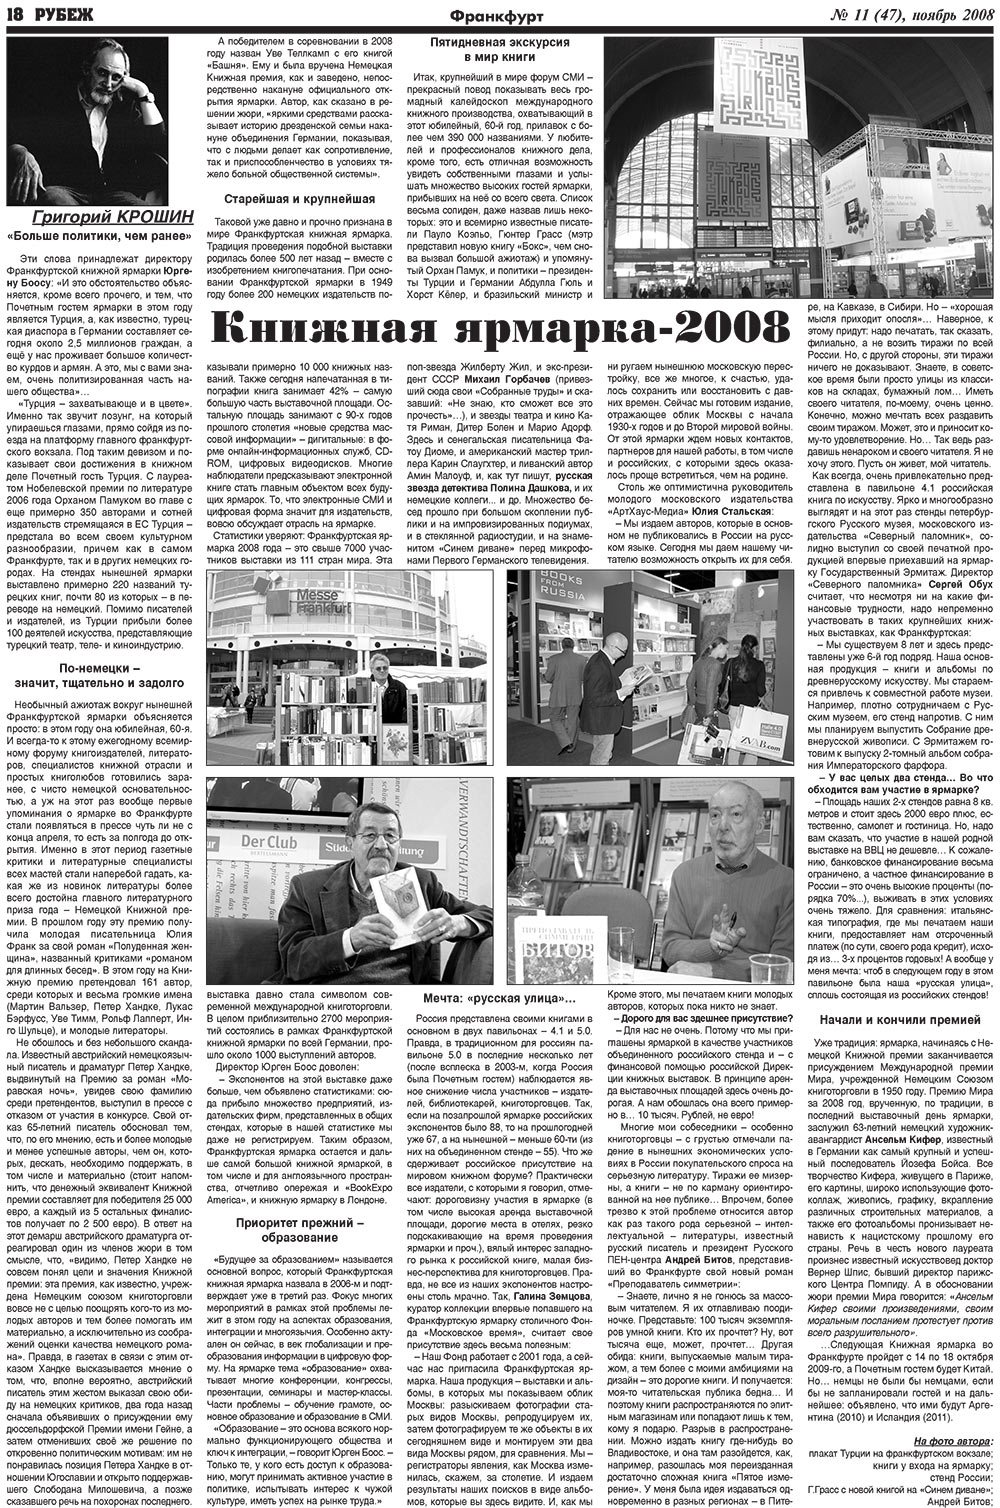 Рубеж (газета). 2008 год, номер 11, стр. 18